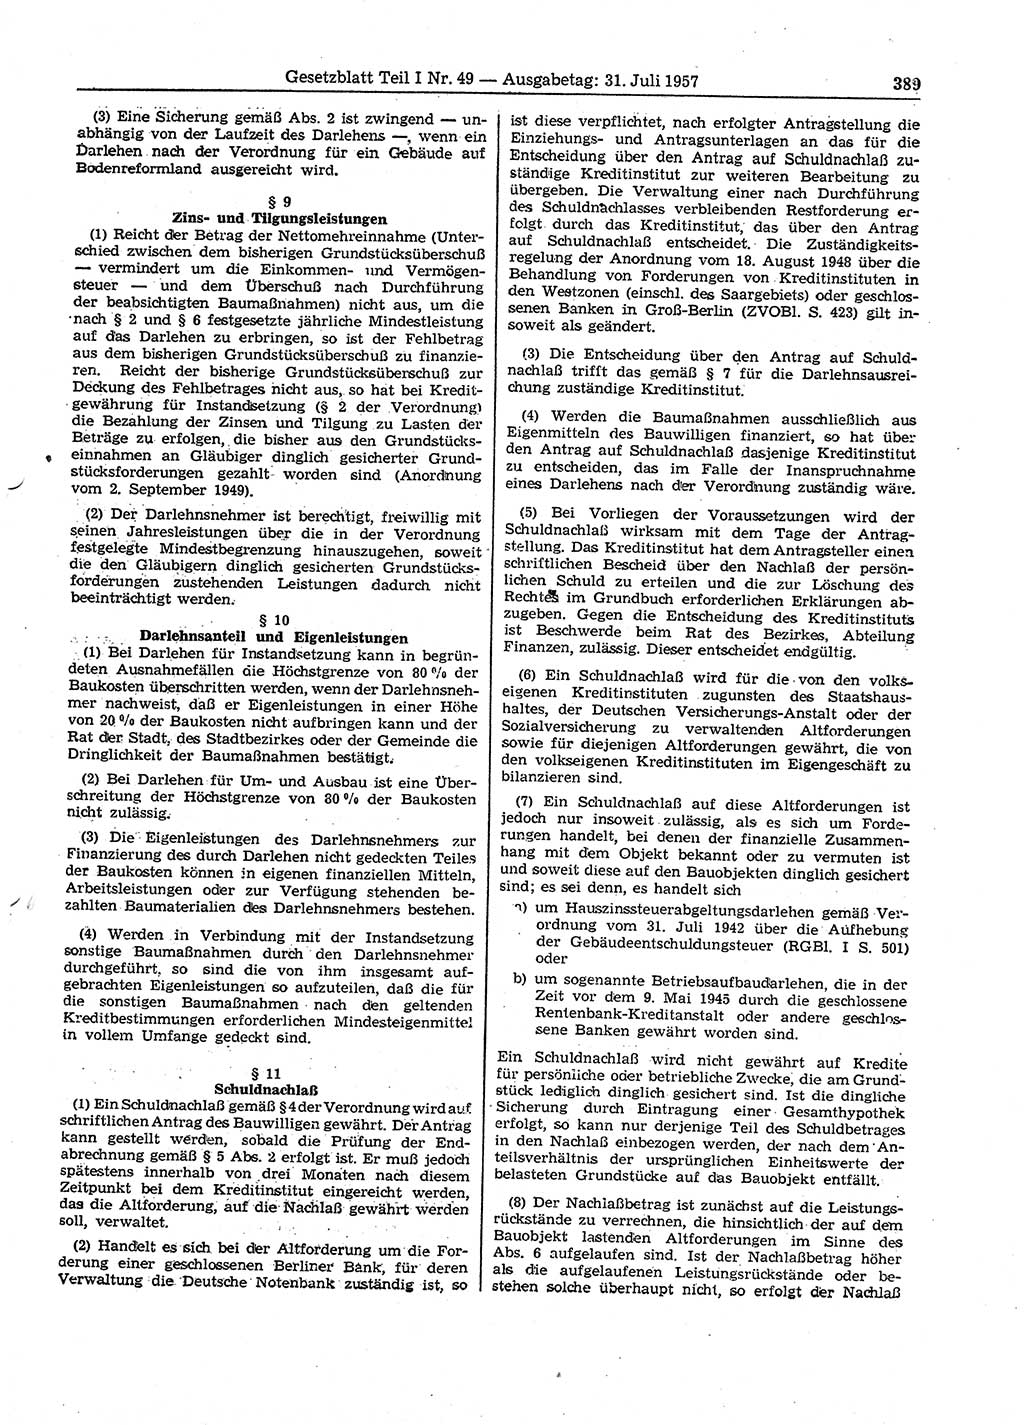 Gesetzblatt (GBl.) der Deutschen Demokratischen Republik (DDR) Teil Ⅰ 1957, Seite 389 (GBl. DDR Ⅰ 1957, S. 389)